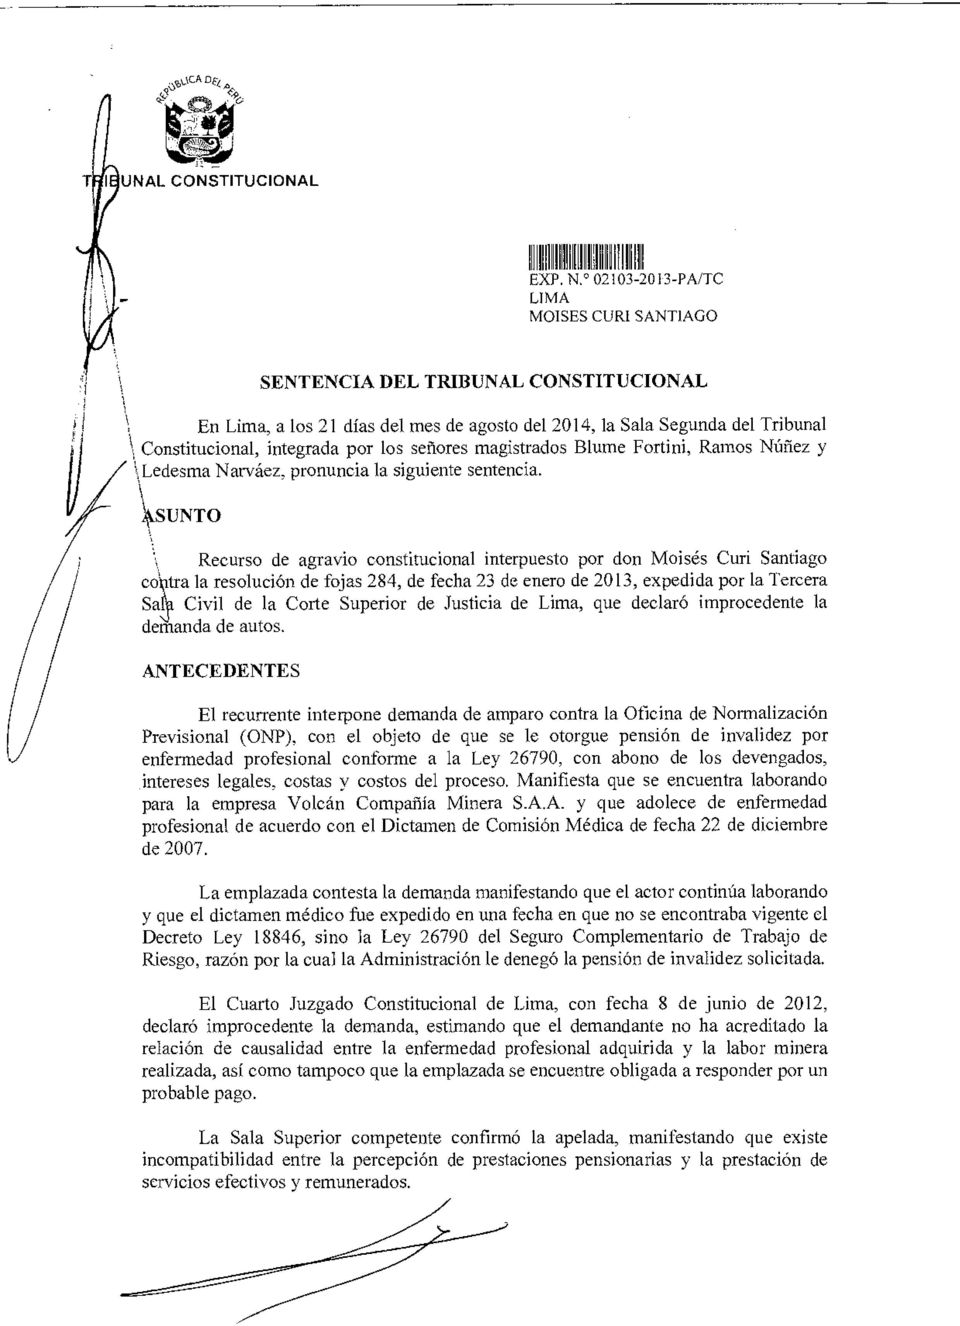 \\SENTO Recurso de agravio constitucional interpuesto por don Moisés Curi Santiago co tra la resolución de fojas 284, de fecha 23 de enero de 2013, expedida por la Tercera Sal Civil de la Corte